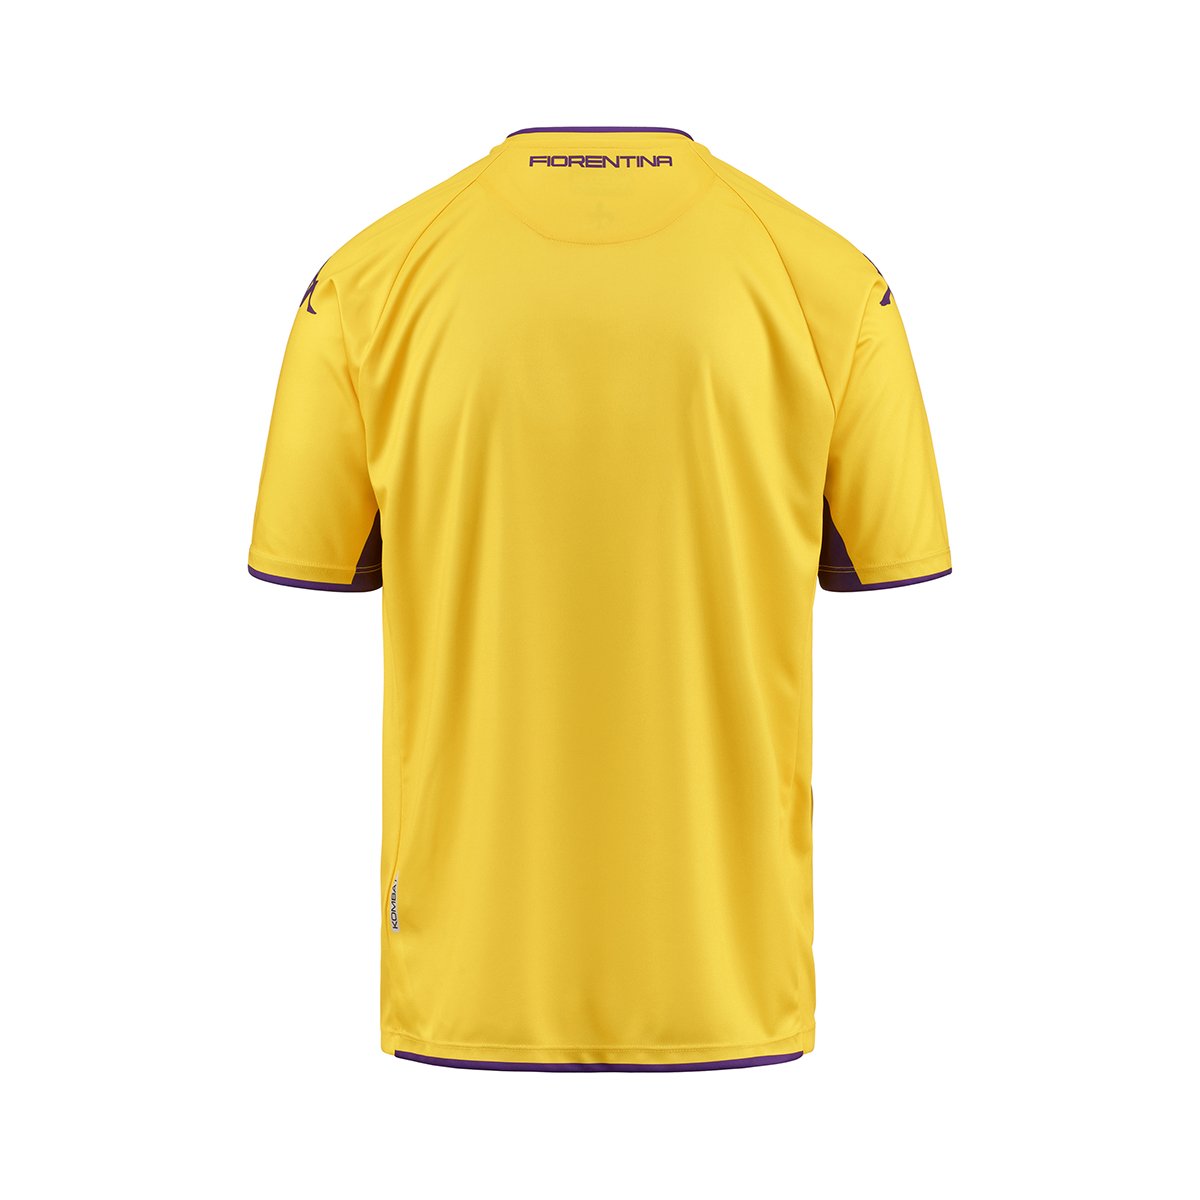 Camiseta Kombat Third Fiorentina hombre Amarillo - Imagen 2